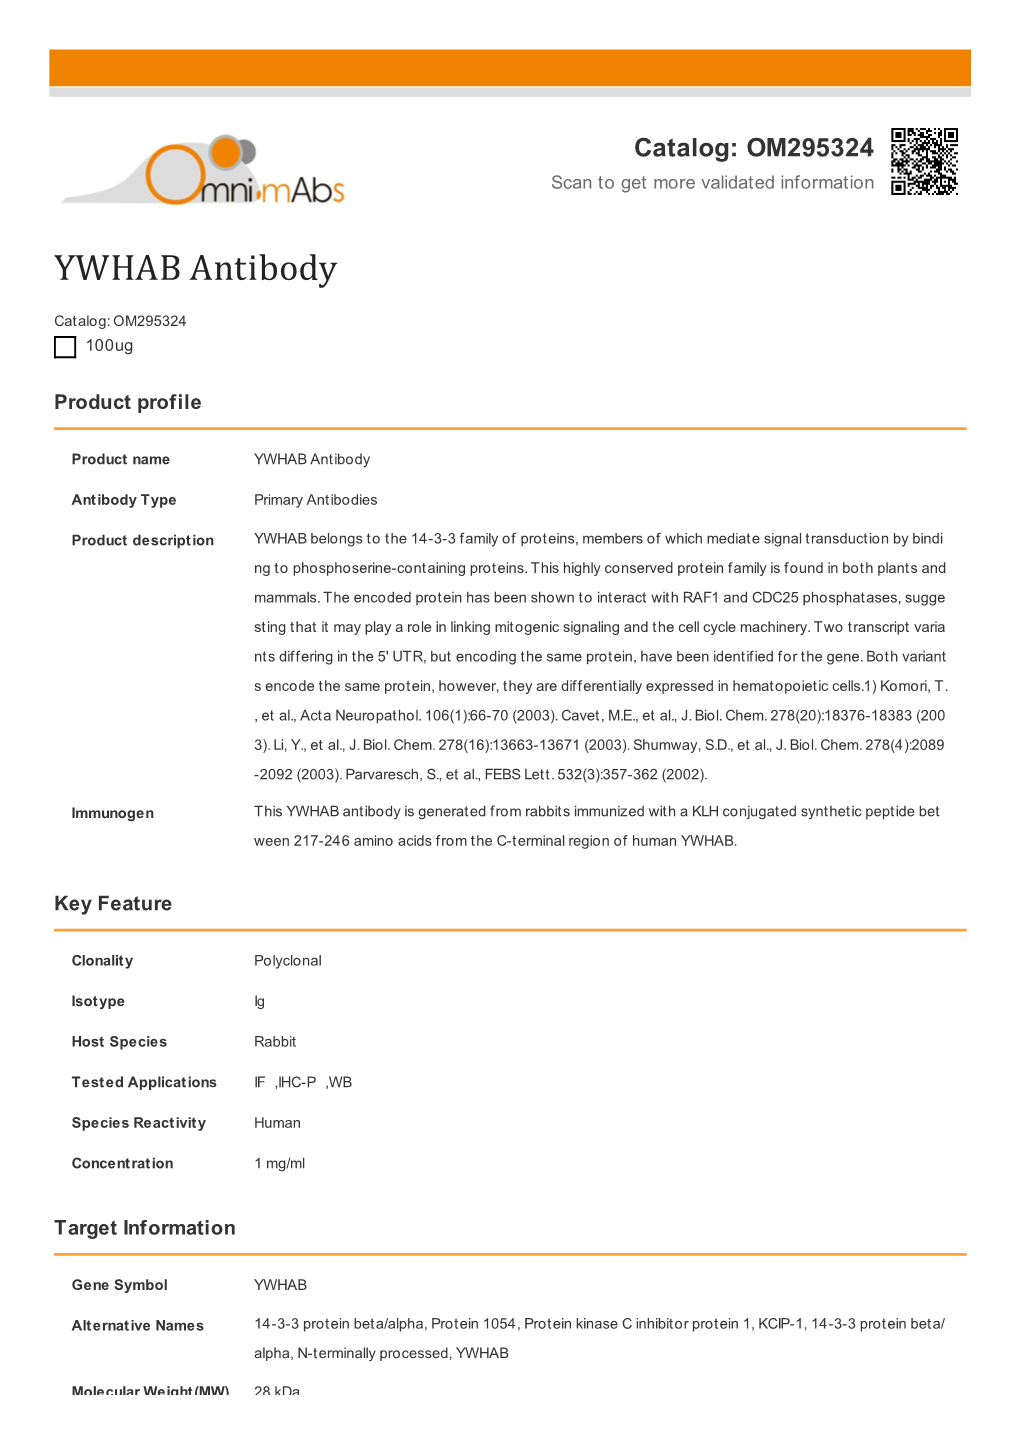 YWHAB Antibody